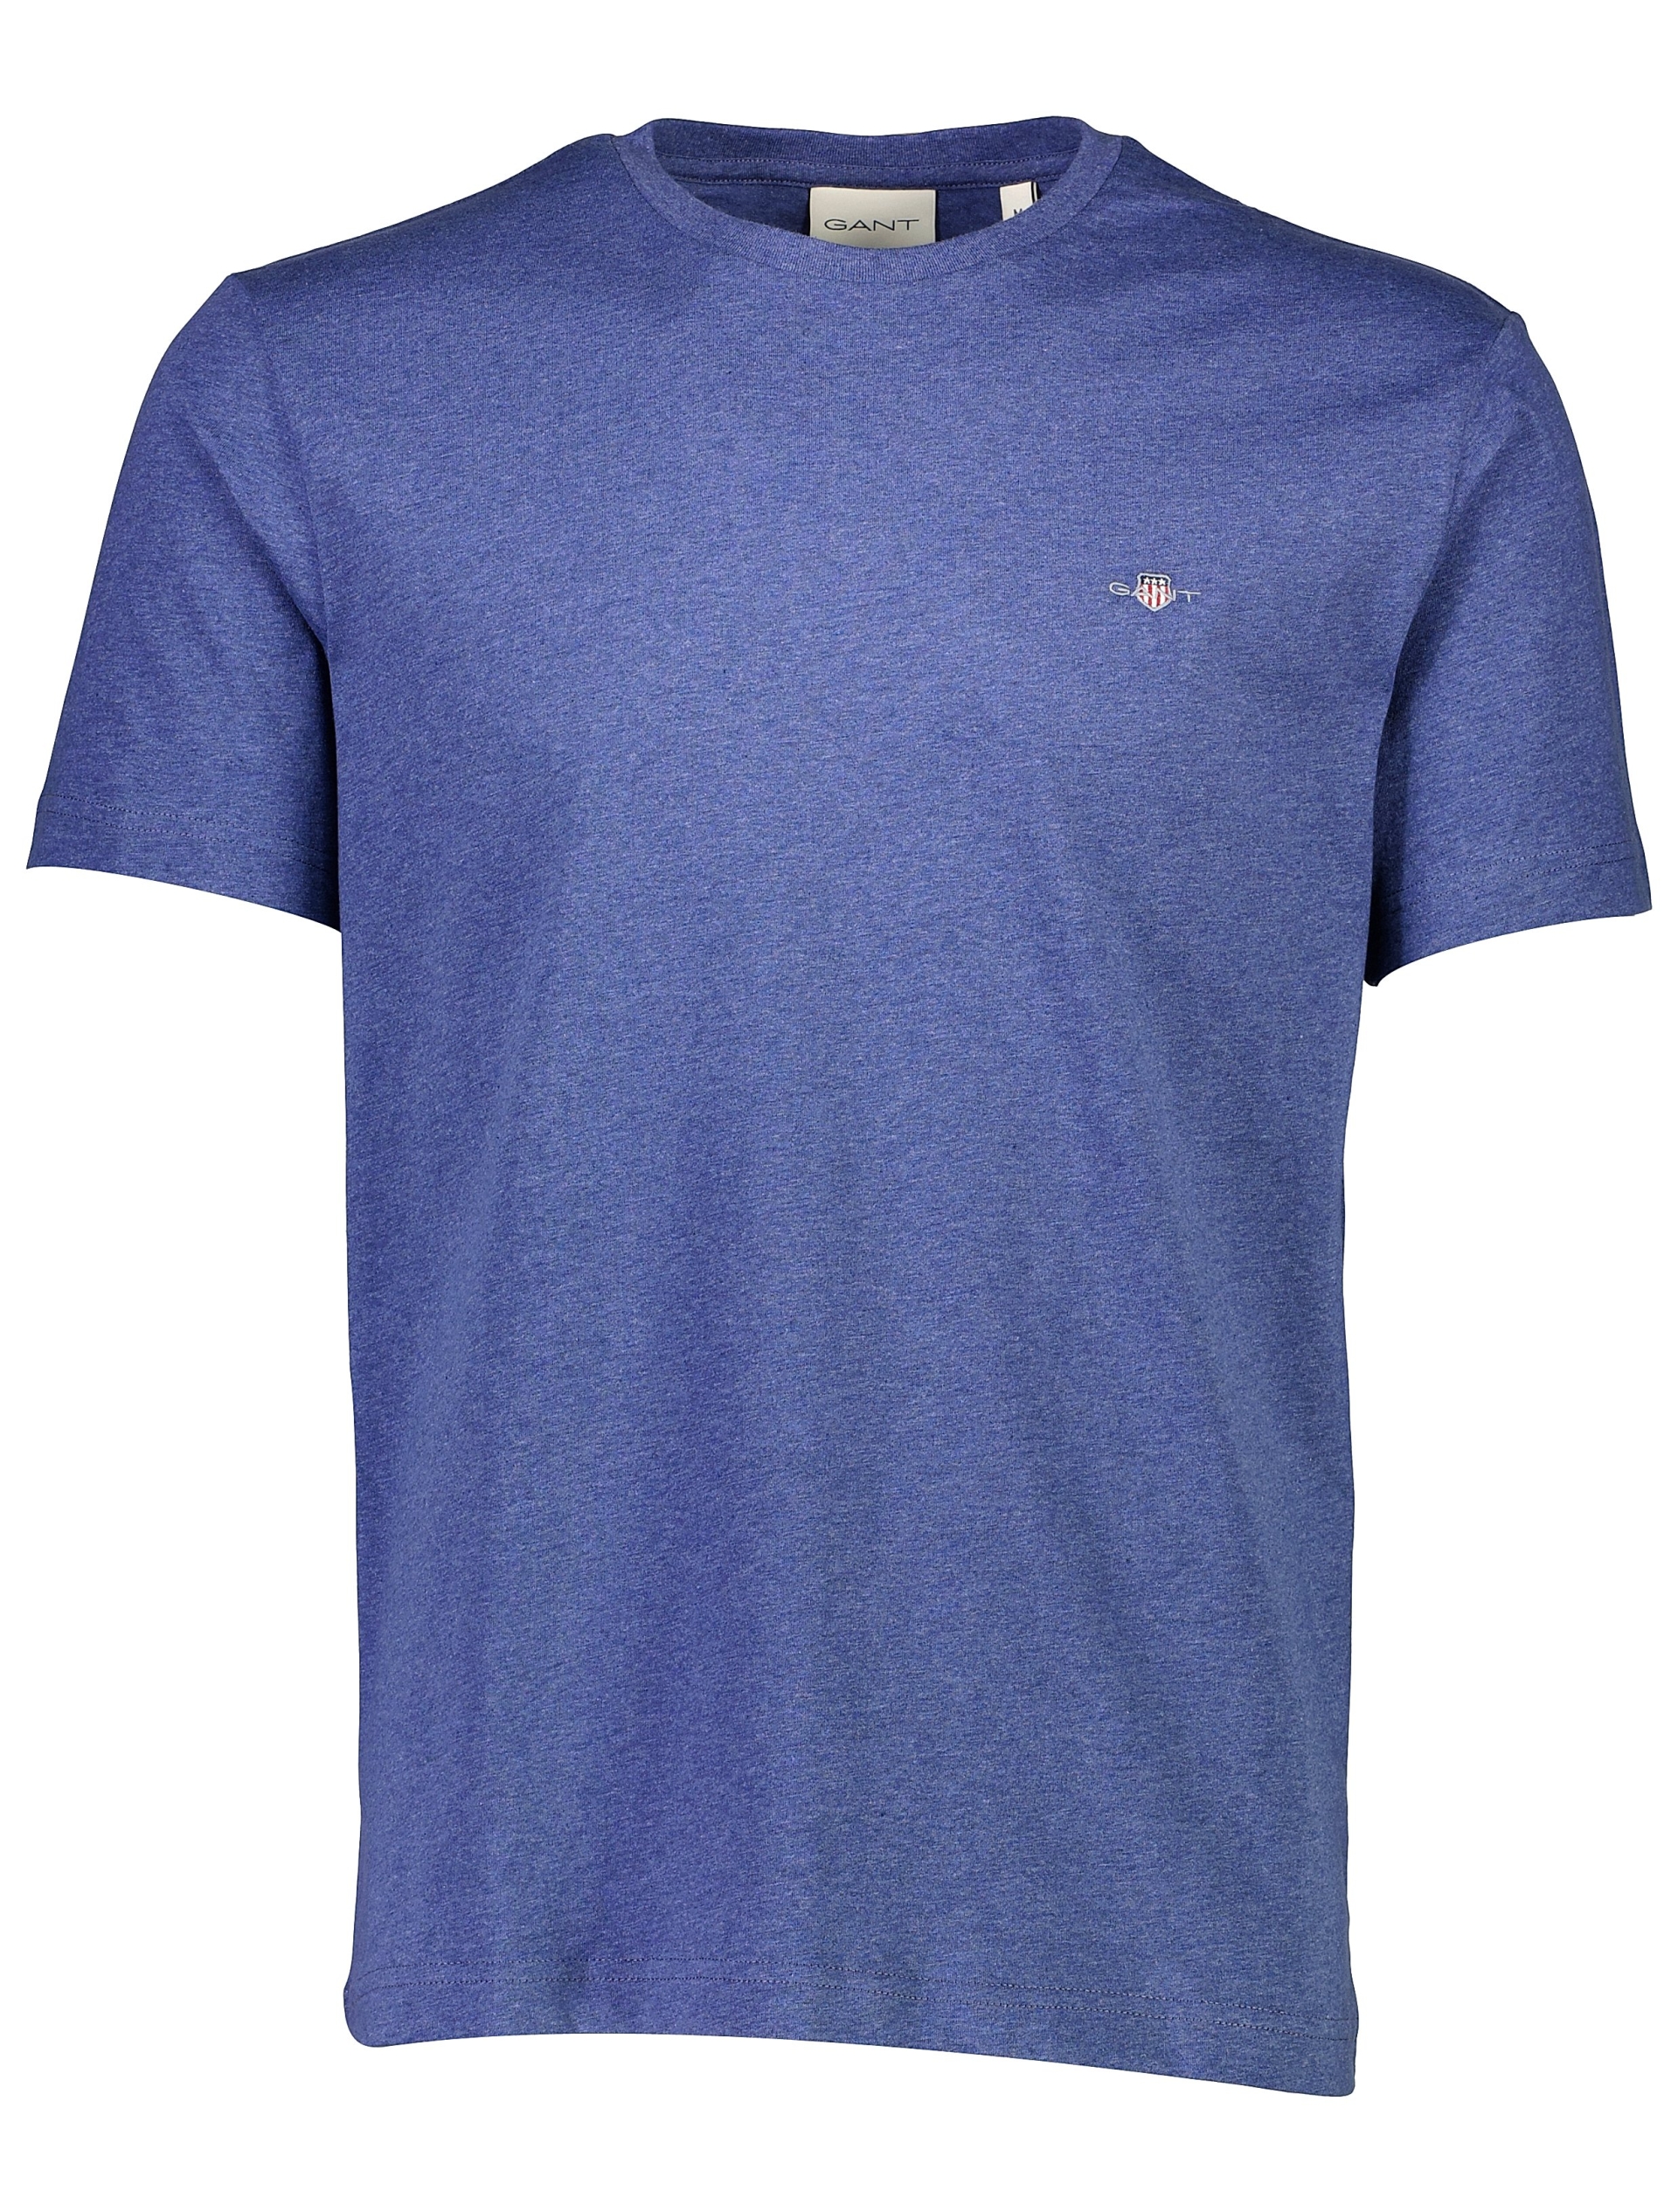 Gant T-shirt blå / 902 dk jeansblue mel